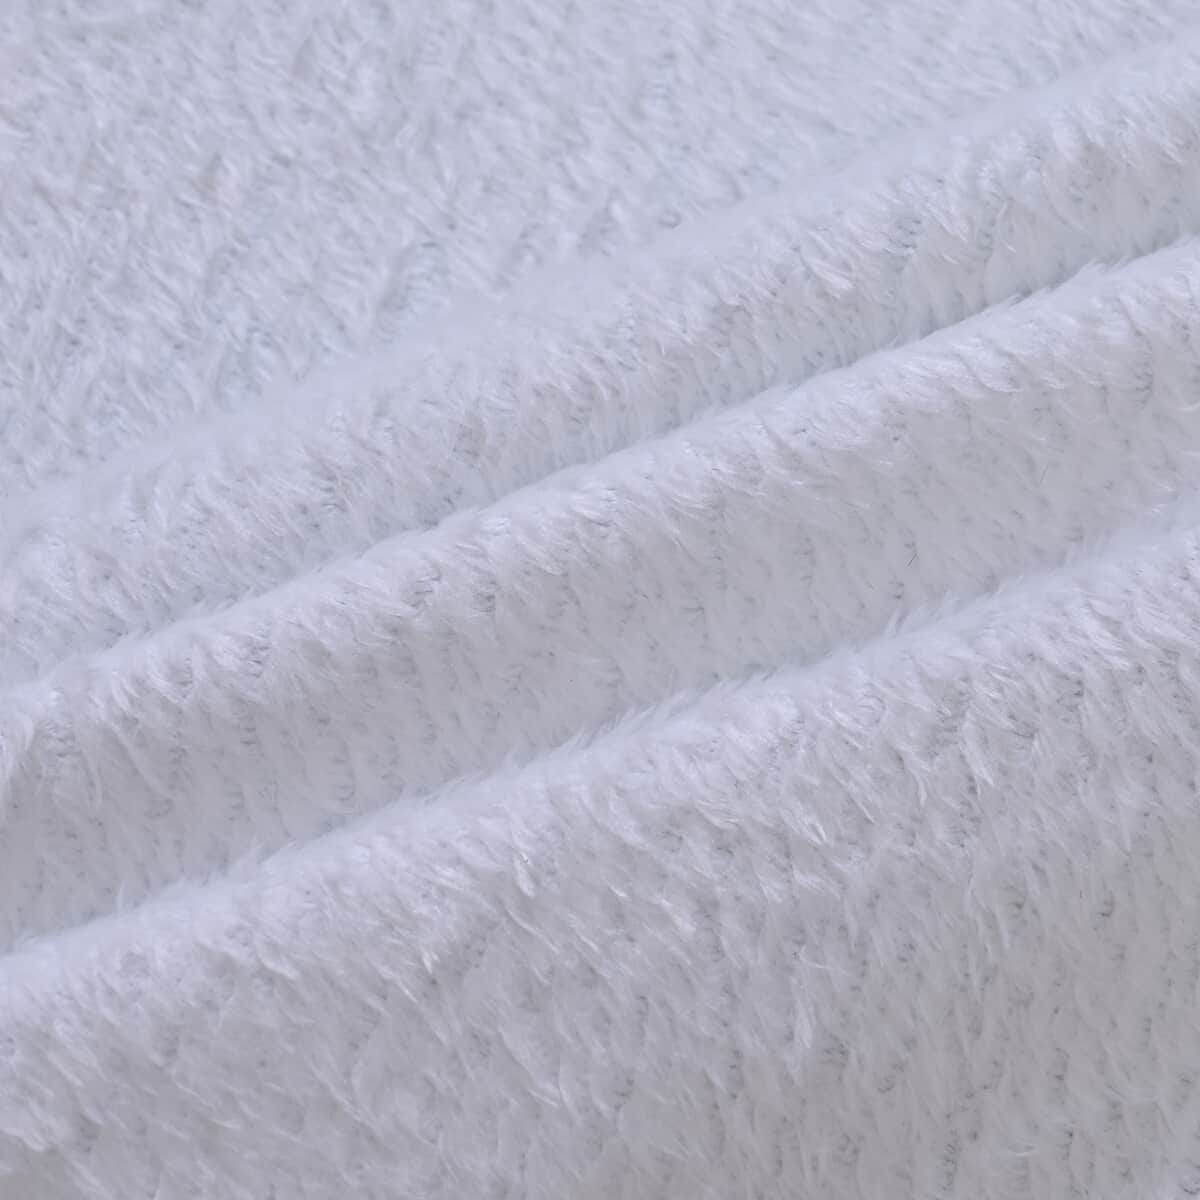 Homesmart Digital Print Deer Pattern Flannel Blanket (60x80) (Microfiber) image number 5